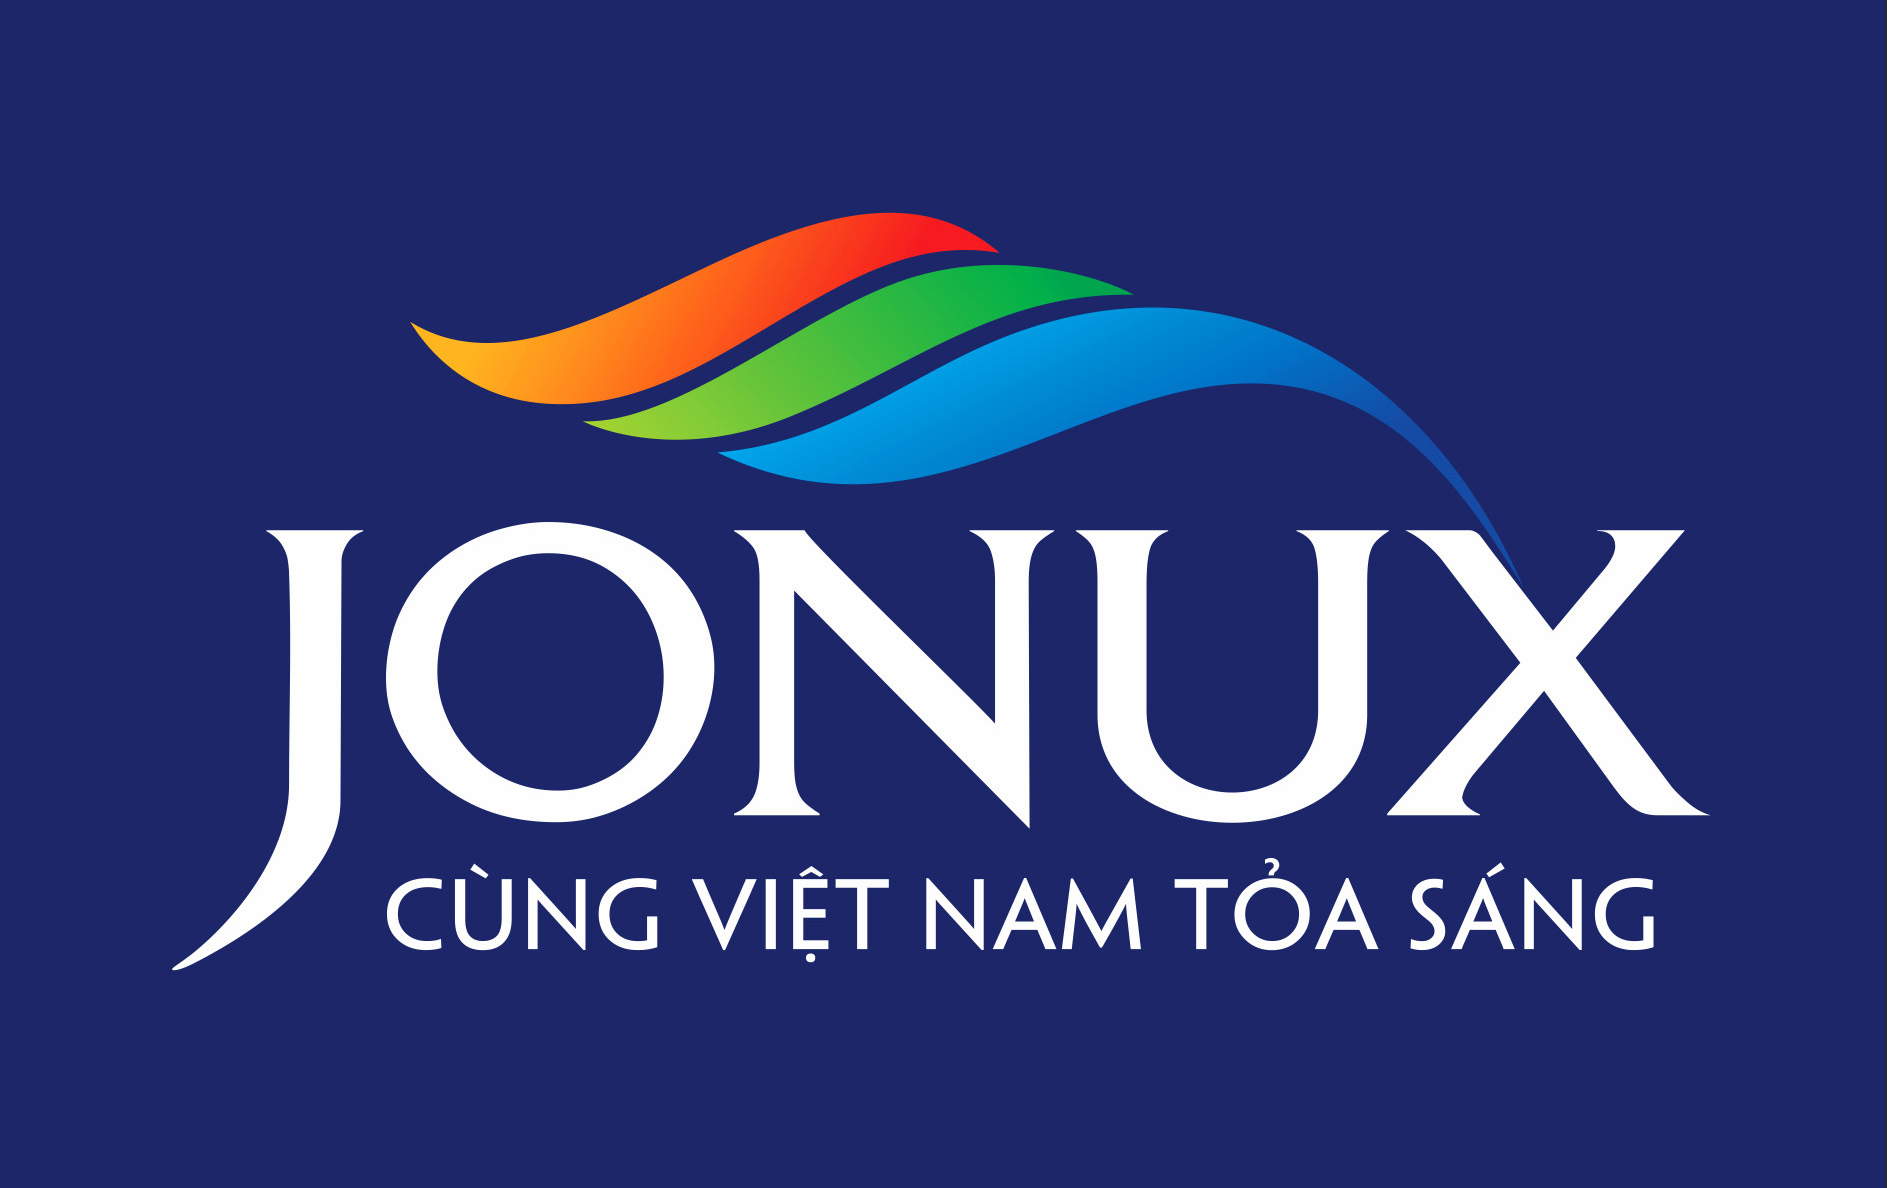 Công ty Cp Jonux Châu Á Đồng Hành Cùng Hoạt Động Tình Nguyện Thành Đoàn Hạ Long